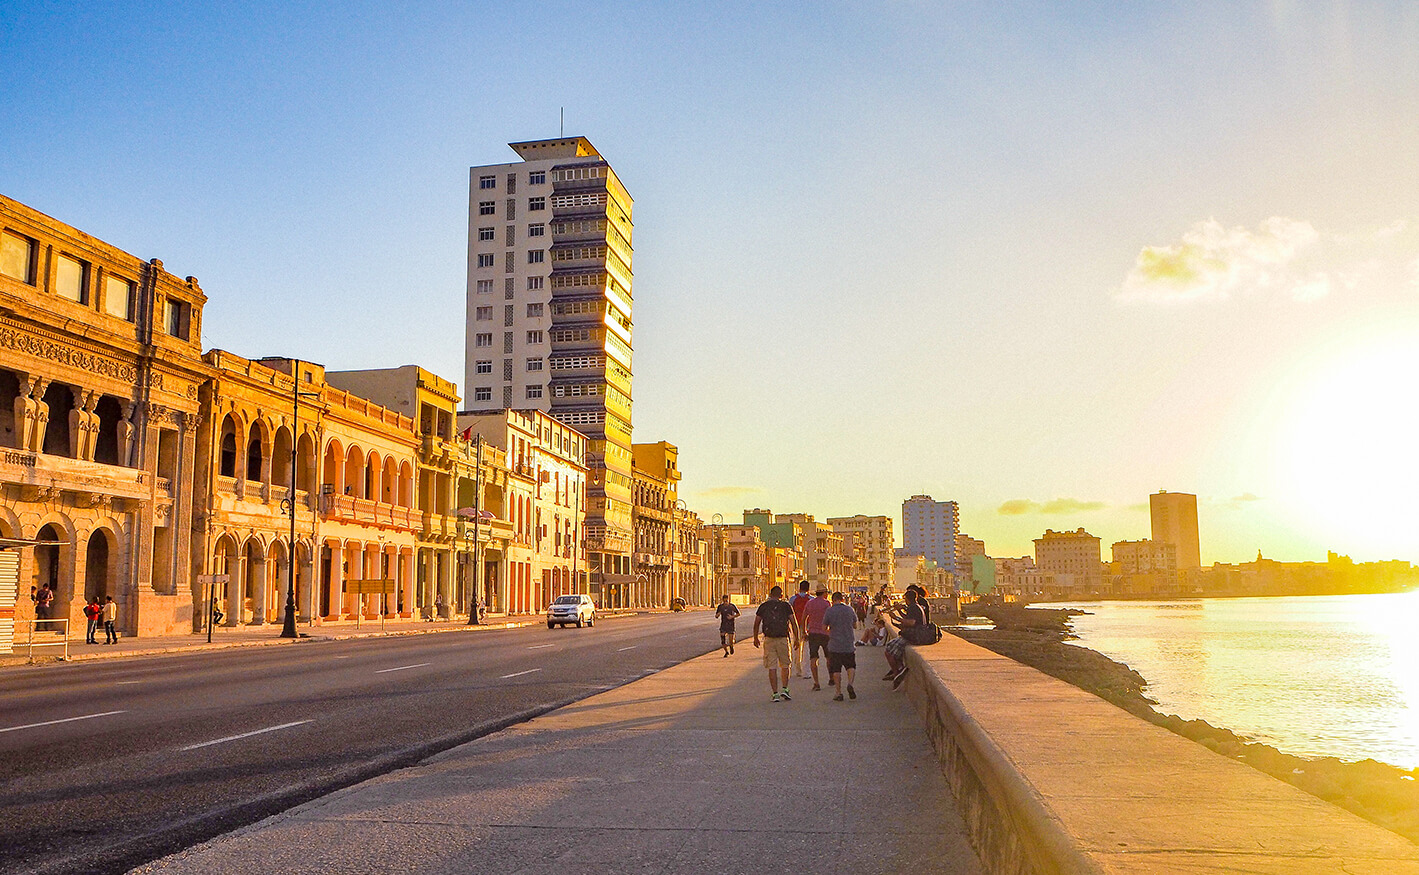 Sunset on Havana's Malecon